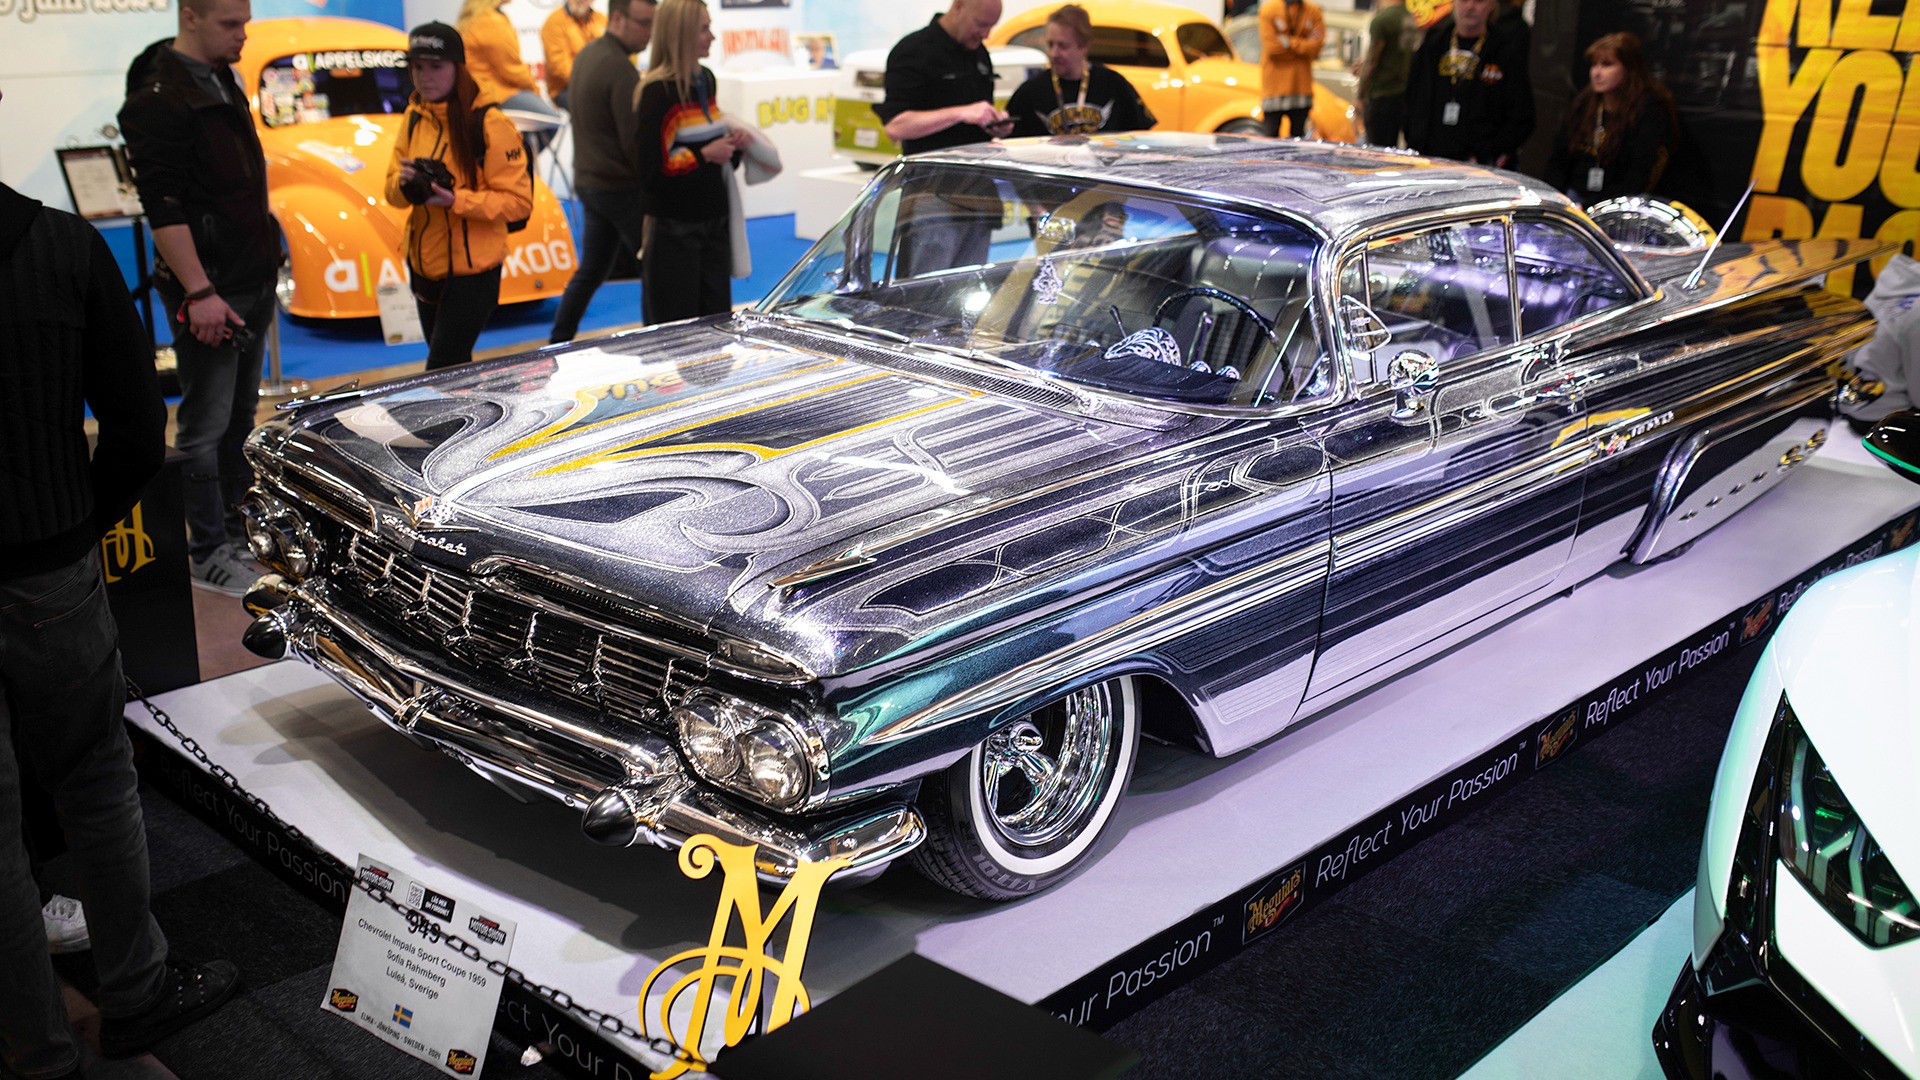 1959 Impala med mildt sagt imponerende lakkjobb. Denne tok med seg Topp 10 Jury’s Choice Hall B, Best Paint Hall B, og tredjeplass i Best Interior Hall B.